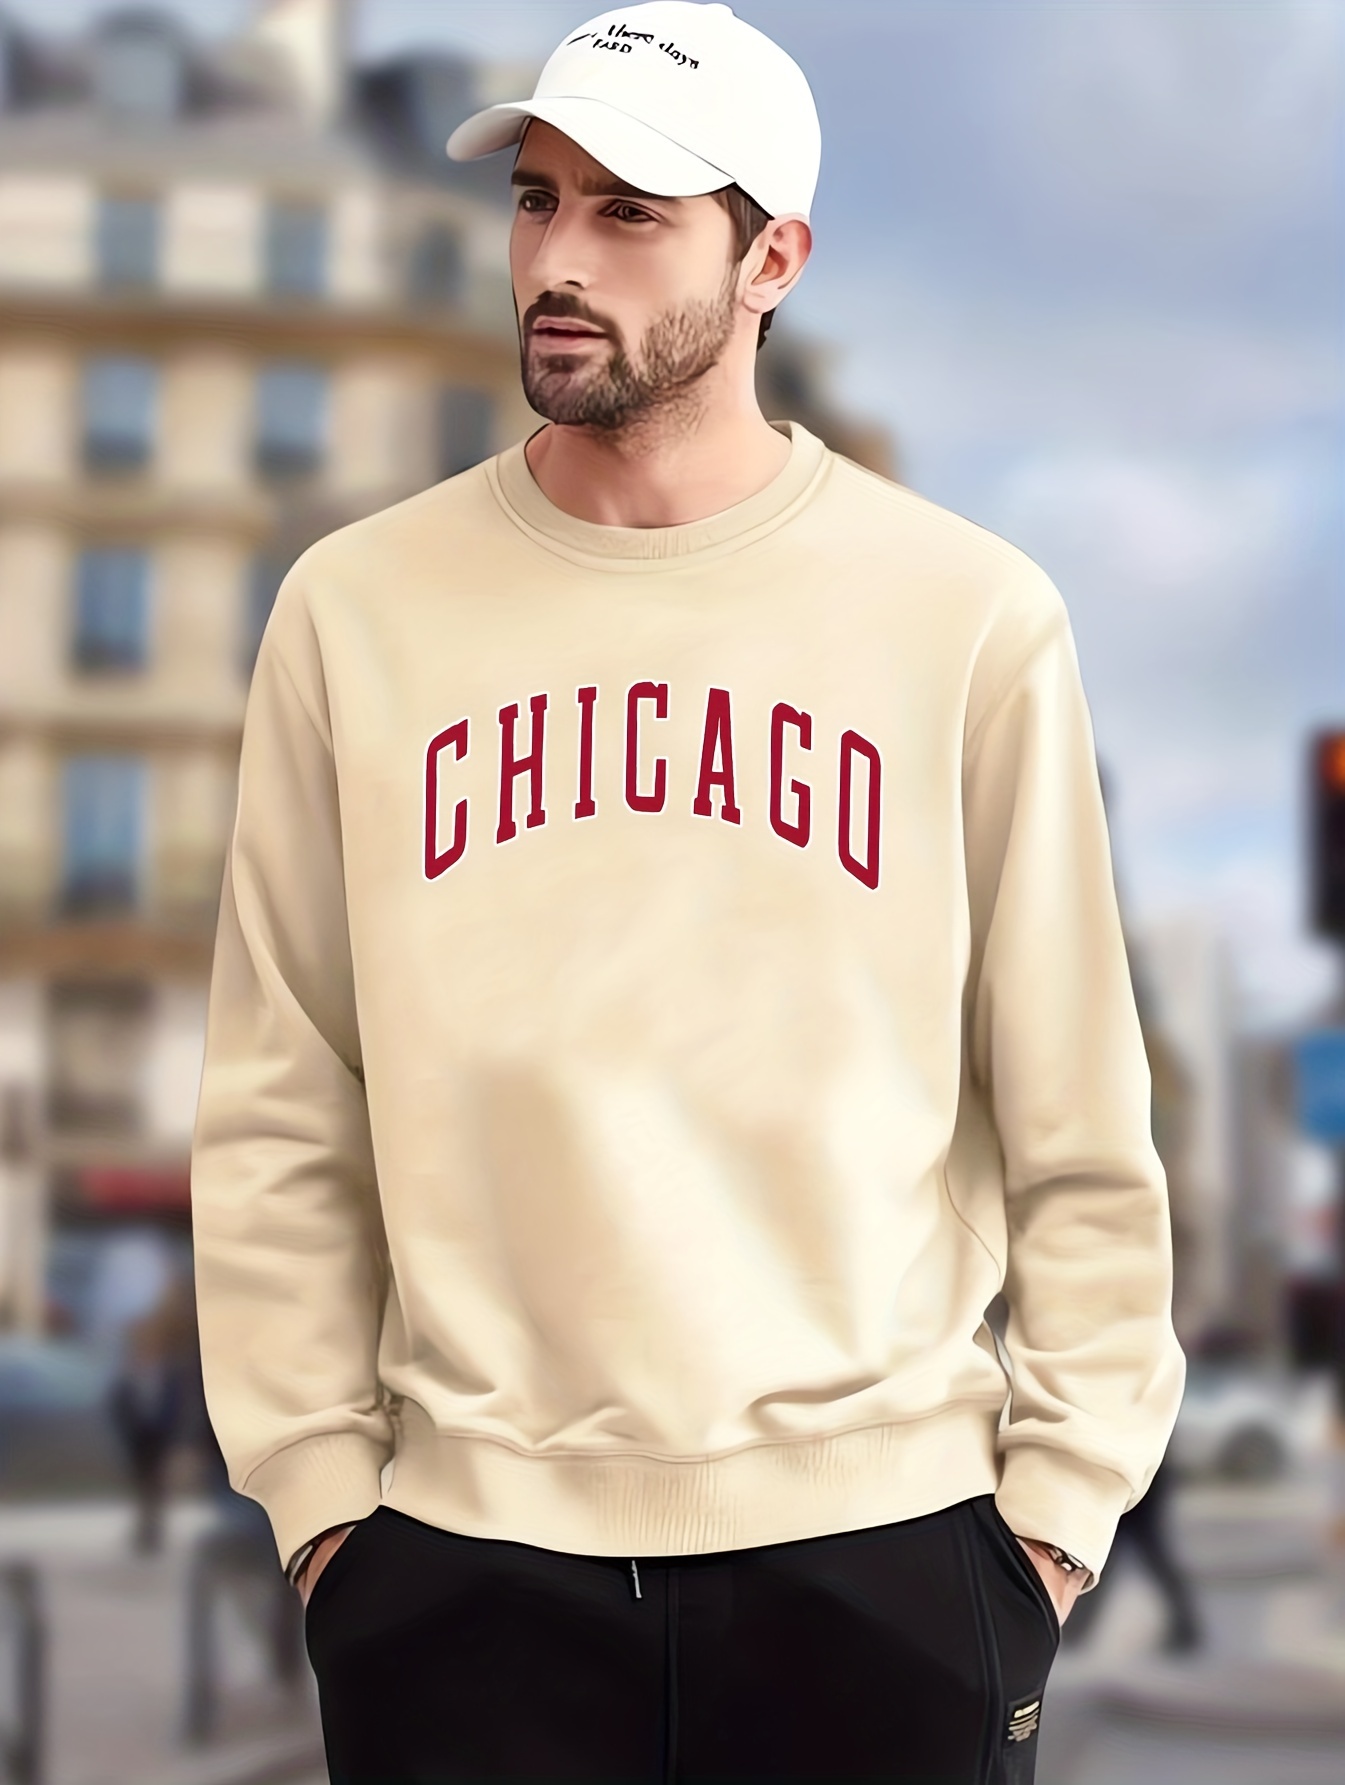 chicago Print Men's Crew Neck Long Sleeve Sweatshirt, Casual Wear